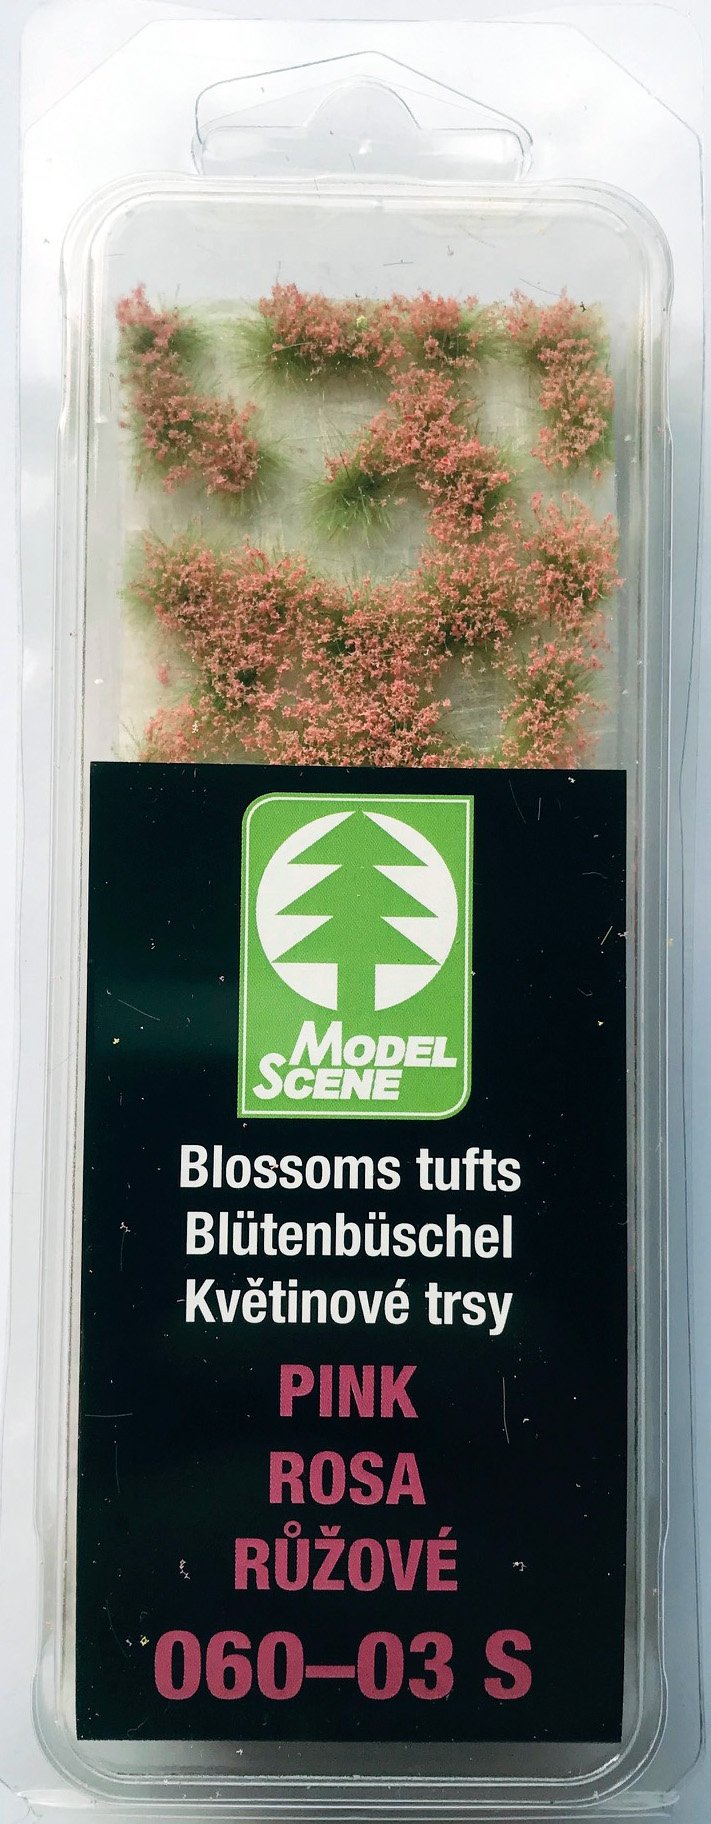 Blütenbüschel Rosa - Langmesser-Modellwelt - Model-Scene